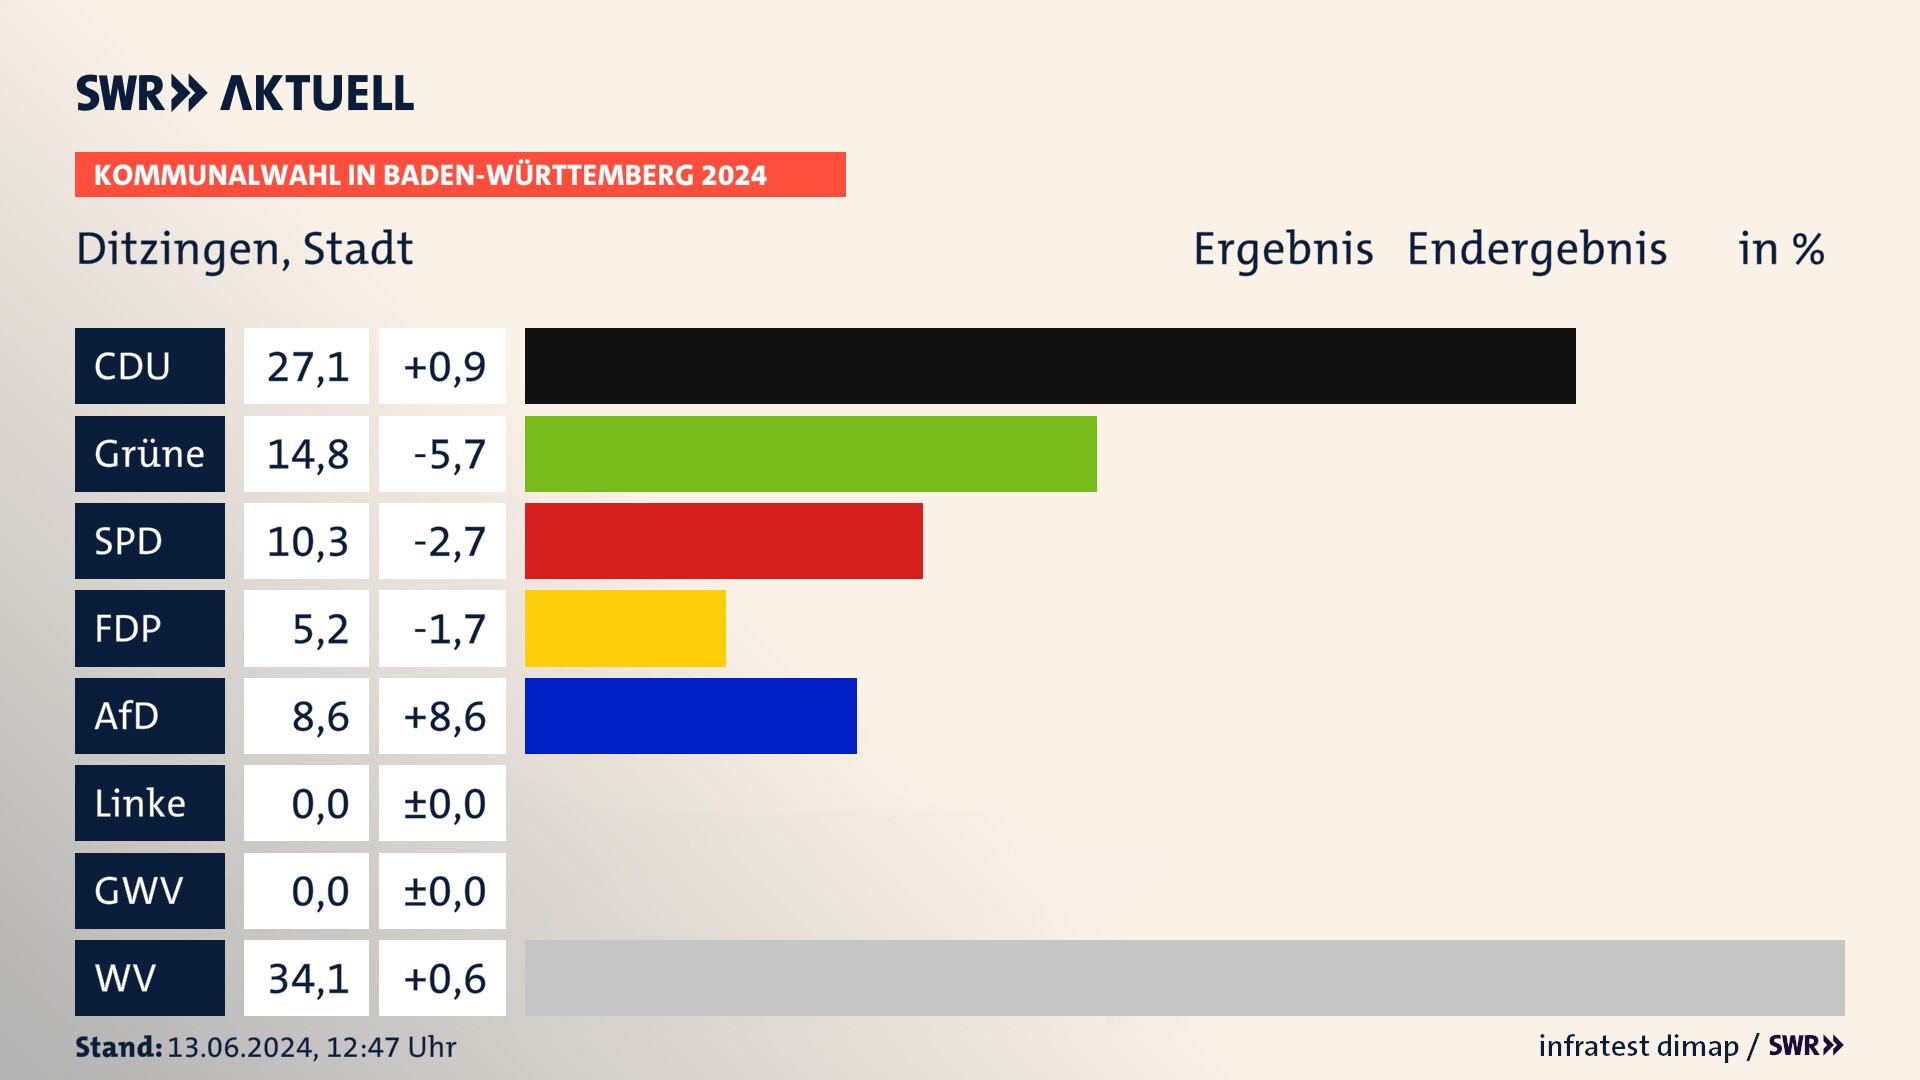 Kommunalwahl 2024 Endergebnis Zweitstimme für Ditzingen. In Ditzingen, Stadt erzielt die CDU 27,1 Prozent der gültigen  Stimmen. Die Grünen landen bei 14,8 Prozent. Die SPD erreicht 10,3 Prozent. Die FDP kommt auf 5,2 Prozent. Die AfD landet bei 8,6 Prozent. Die Wählervereinigungen erreichen 34,1 Prozent.